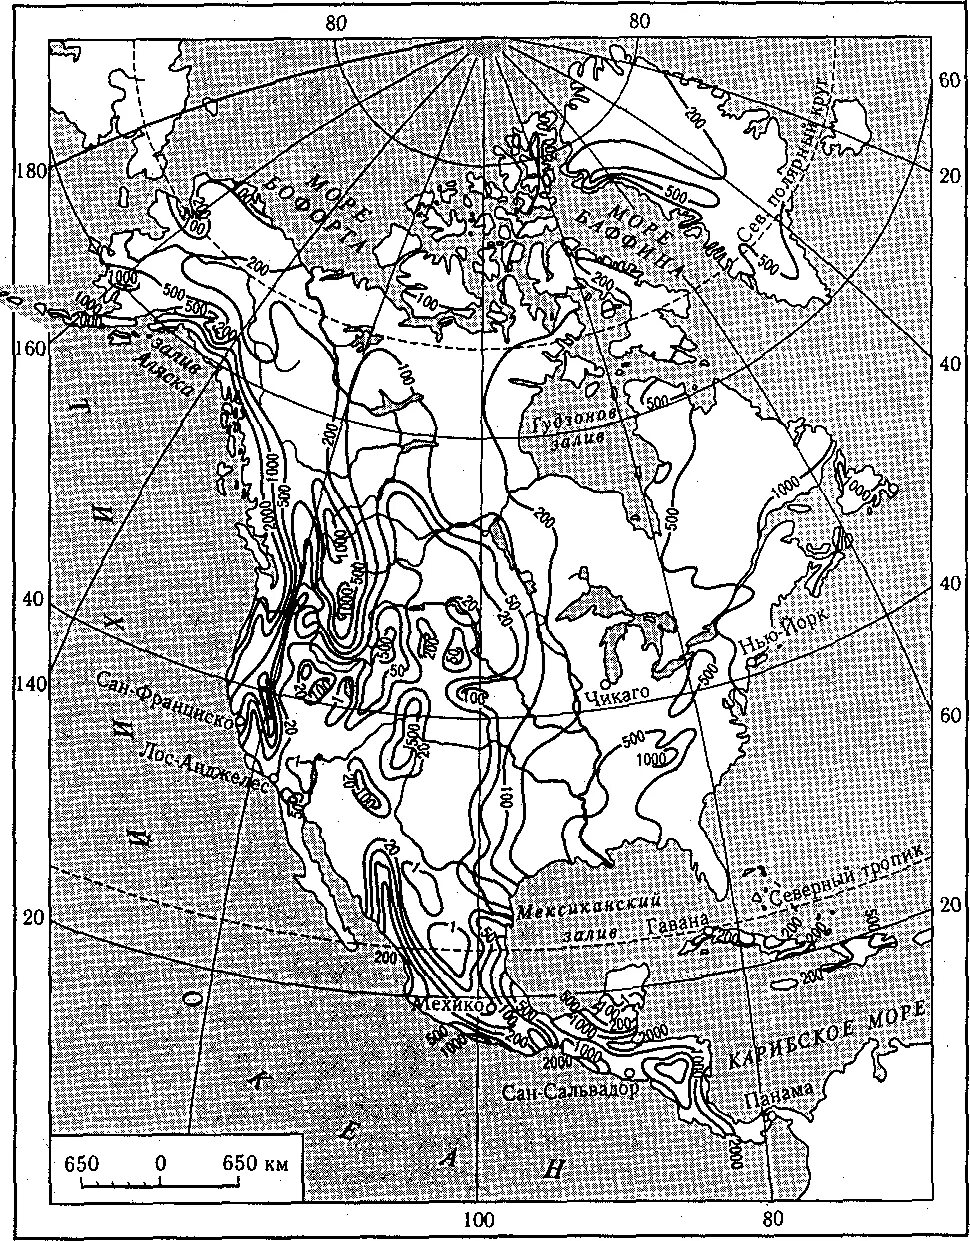 Внутренний сток северной америки. Гидрографическая карта Северной Америки. Водная система Северной Америки. Речные бассейны Северной Америки. Внутренние воды Северной Америки на контурной карте.